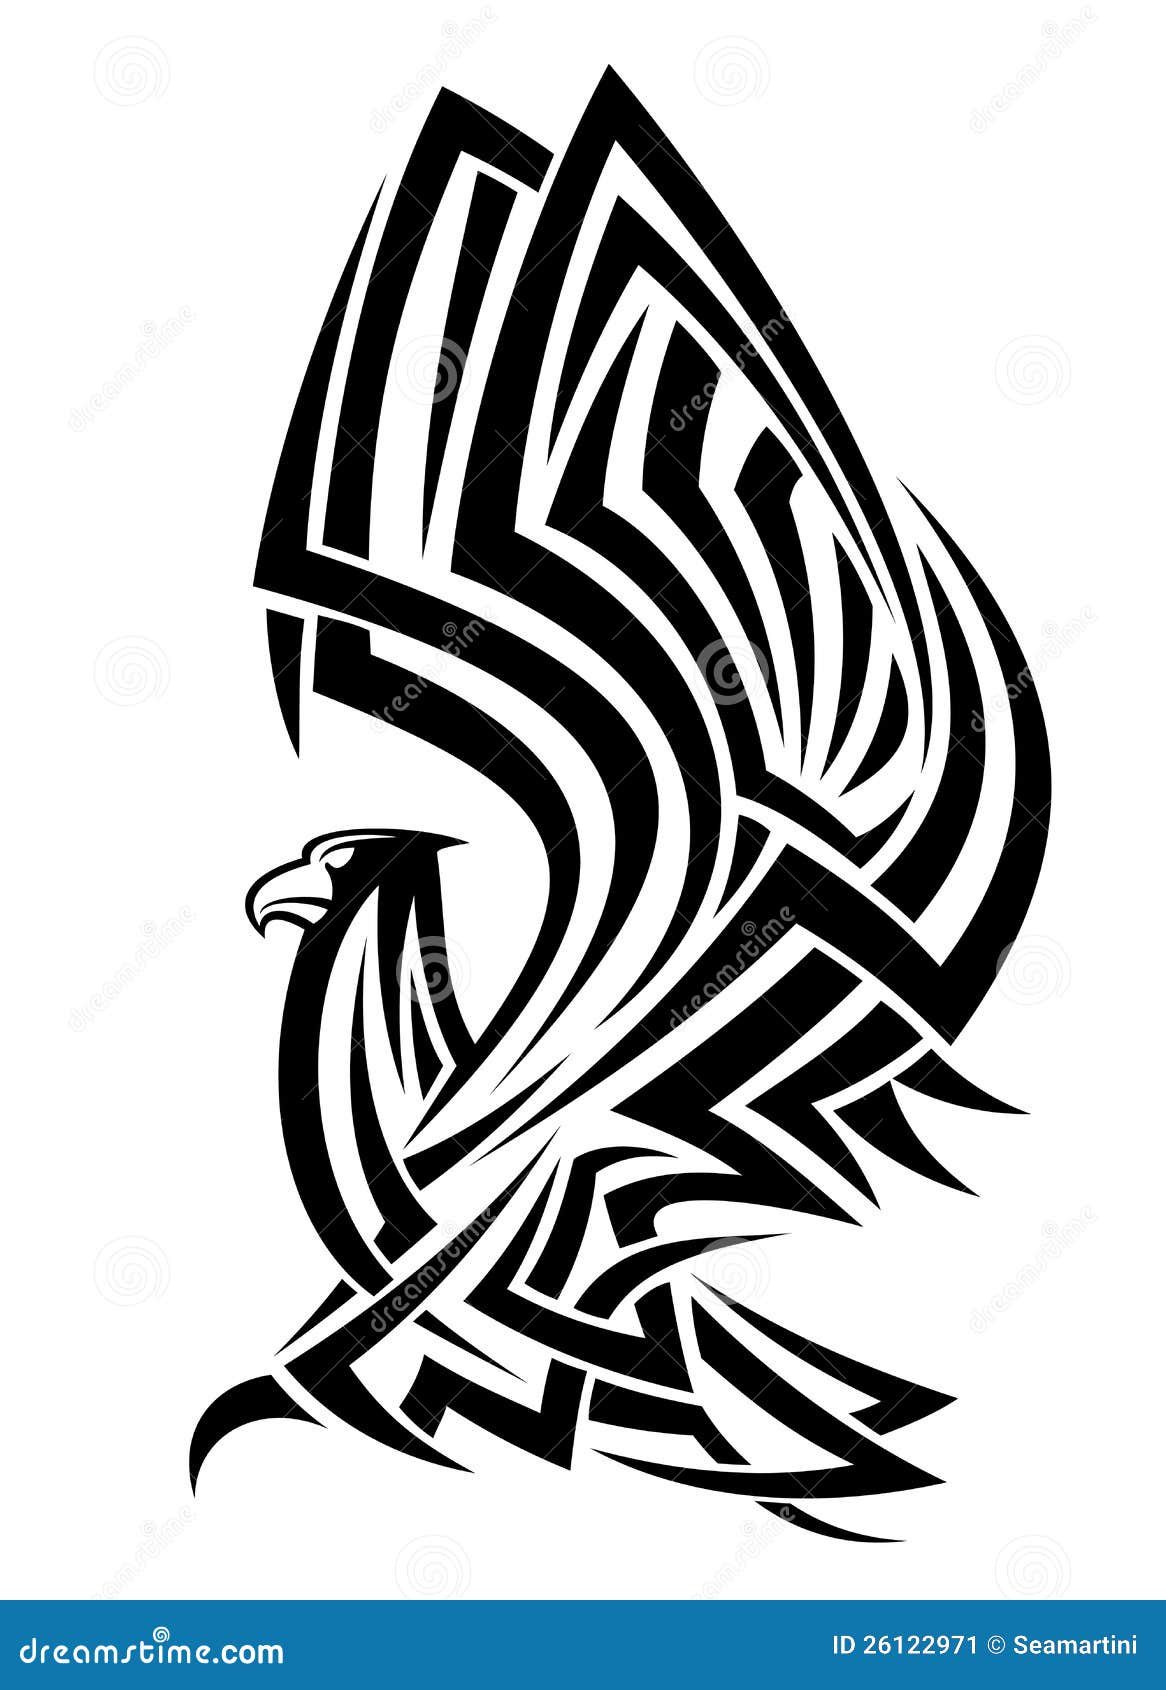 老鹰纹身花刺集合 向量例证. 插画 包括有 自由, 单色, 庄严, 纹章学, 例证, 艺术, 老鹰, 要素 - 79635482